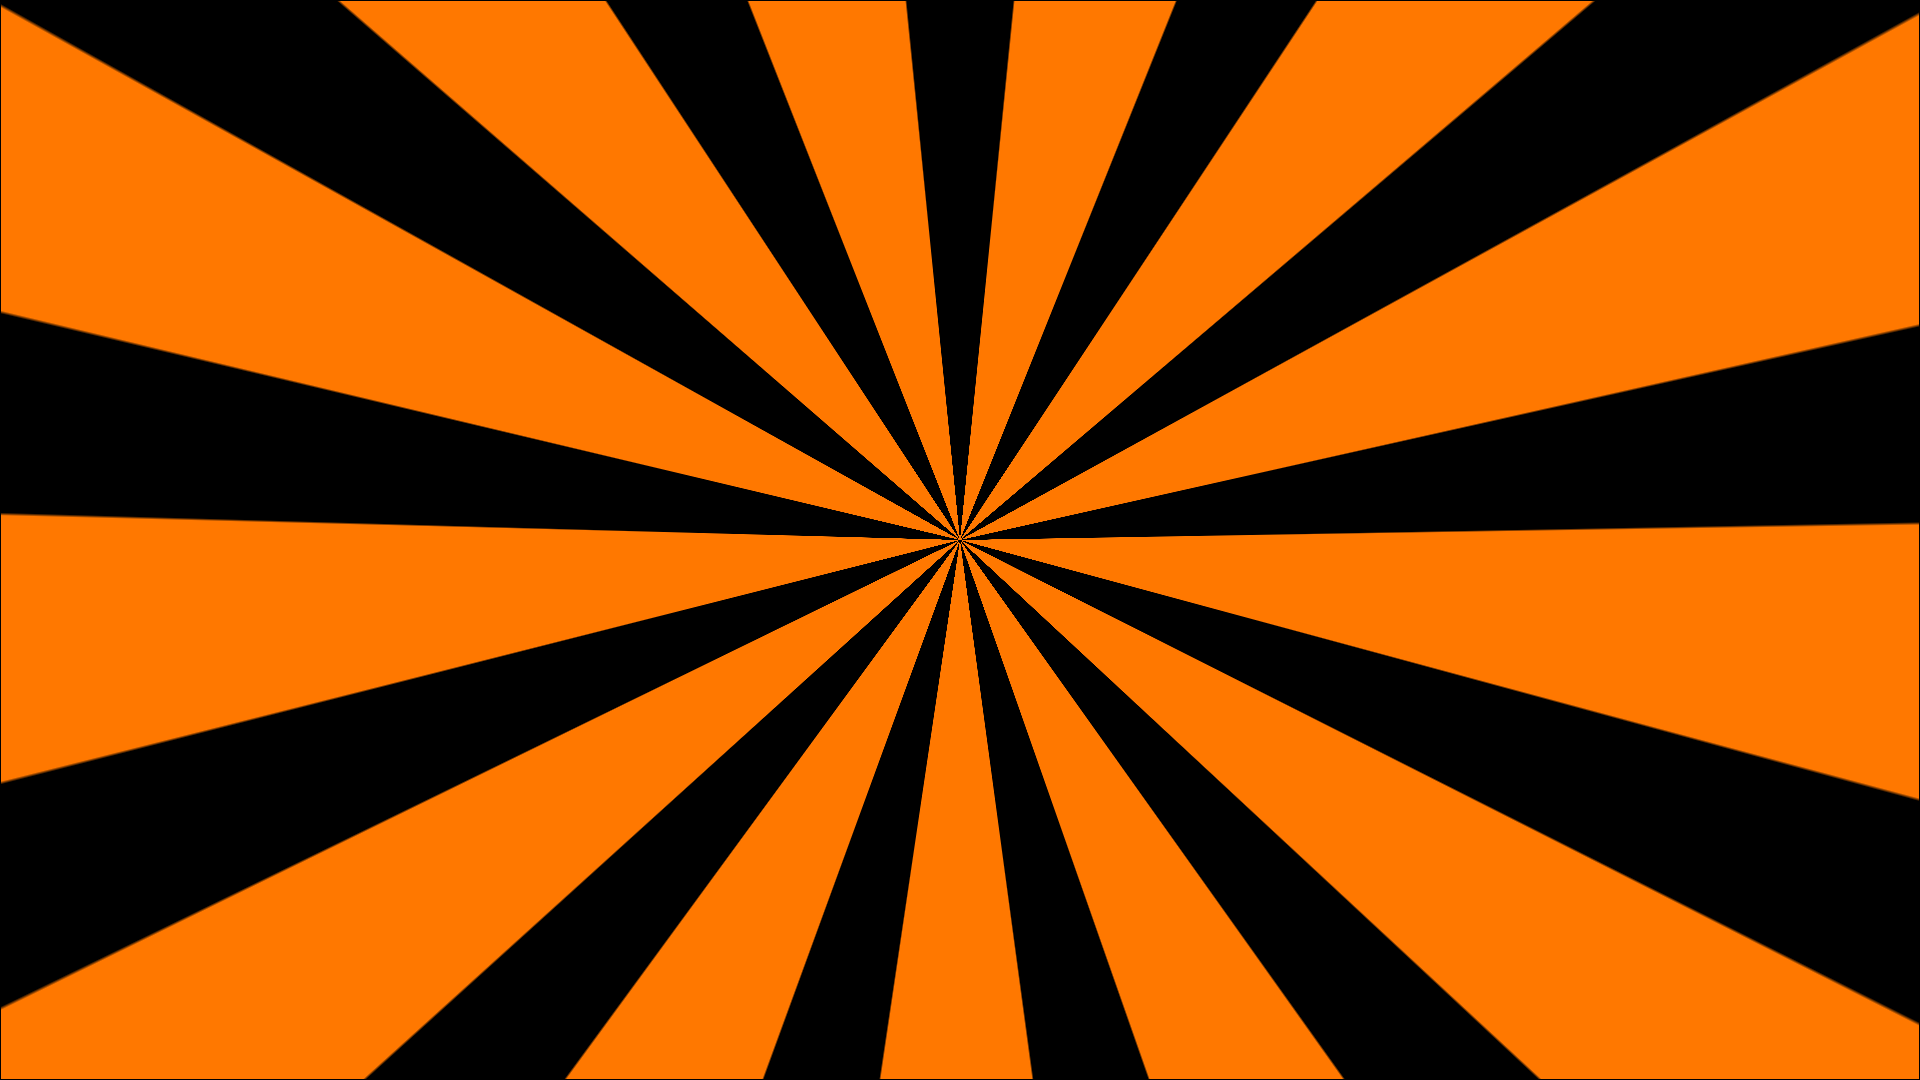 Orange/Black Starburst by watchmebop on DeviantArt